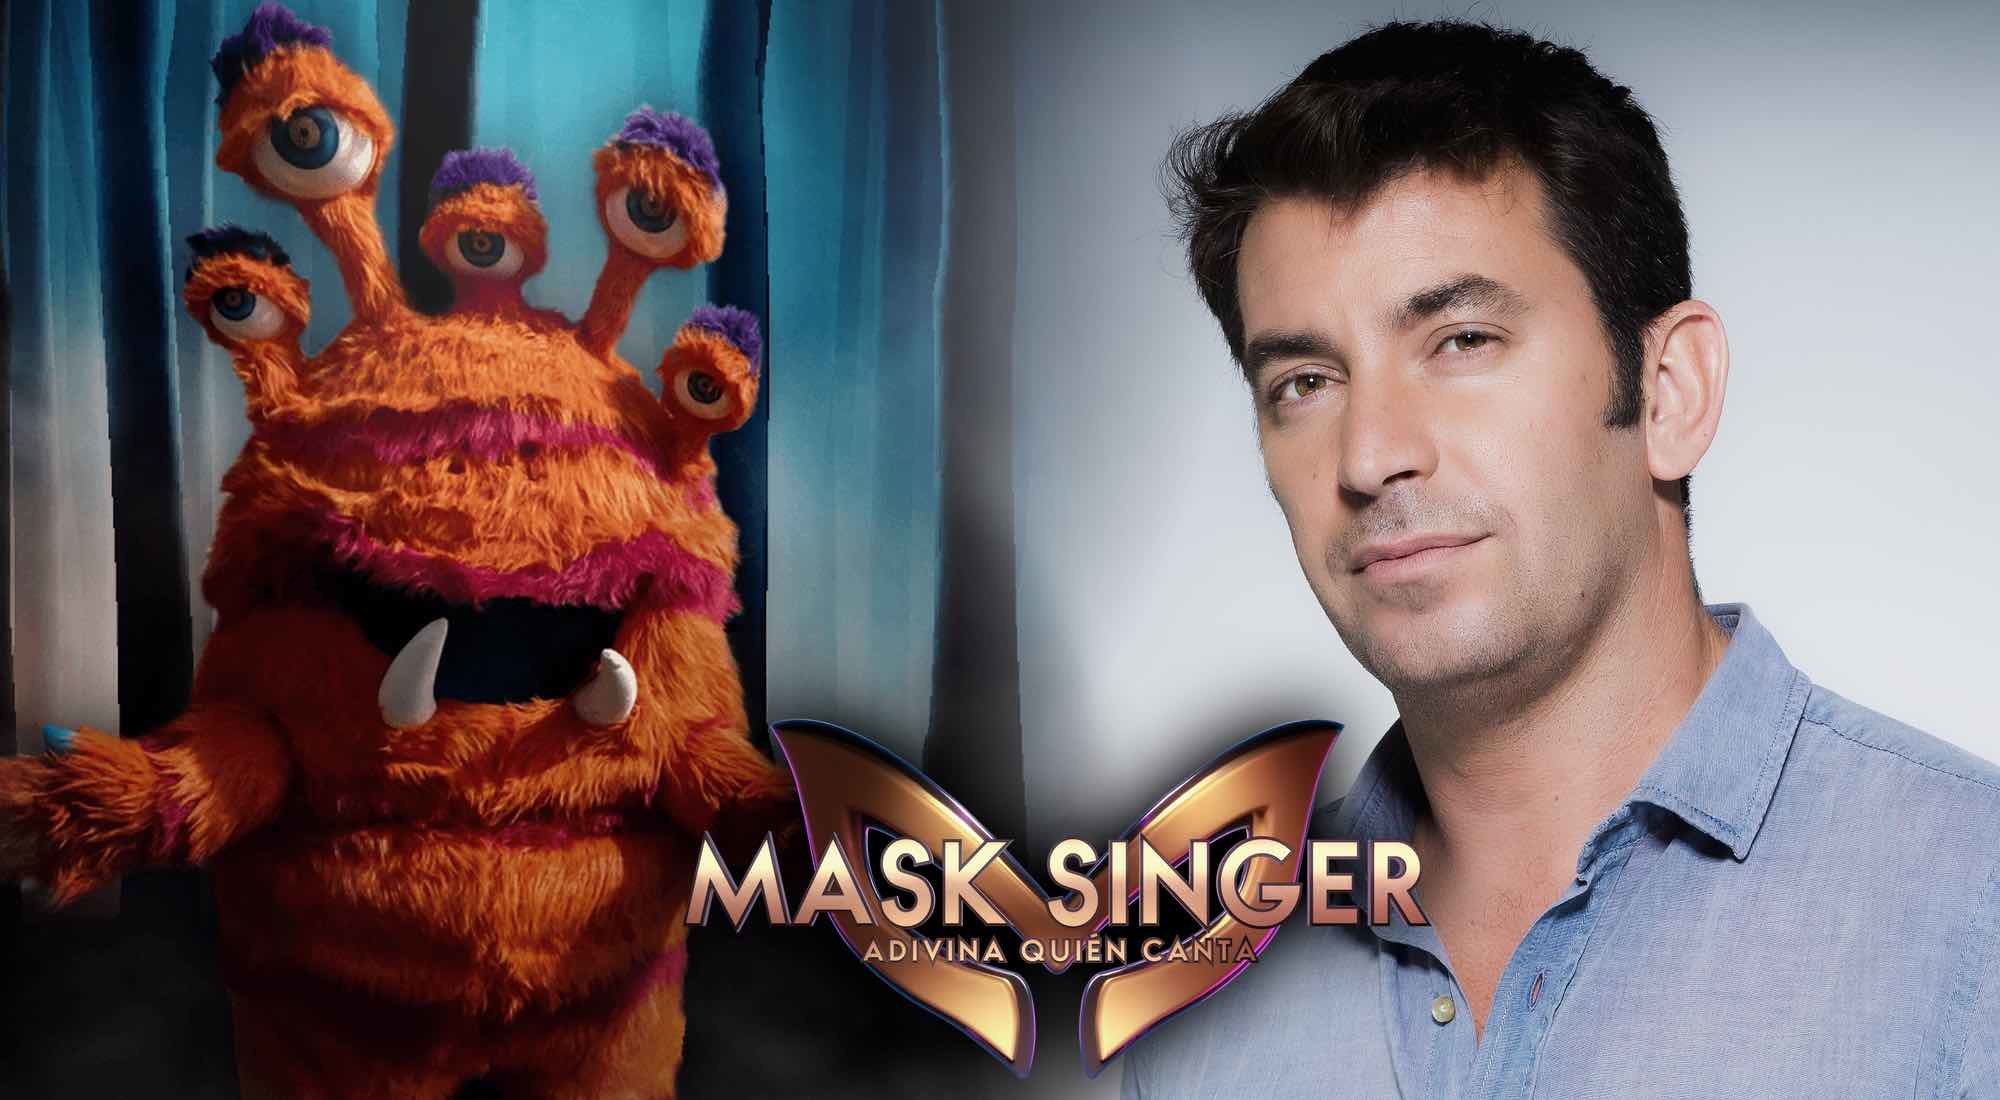 Monstruo y Arturo Valls ('Mask Singer: adivina quién canta')